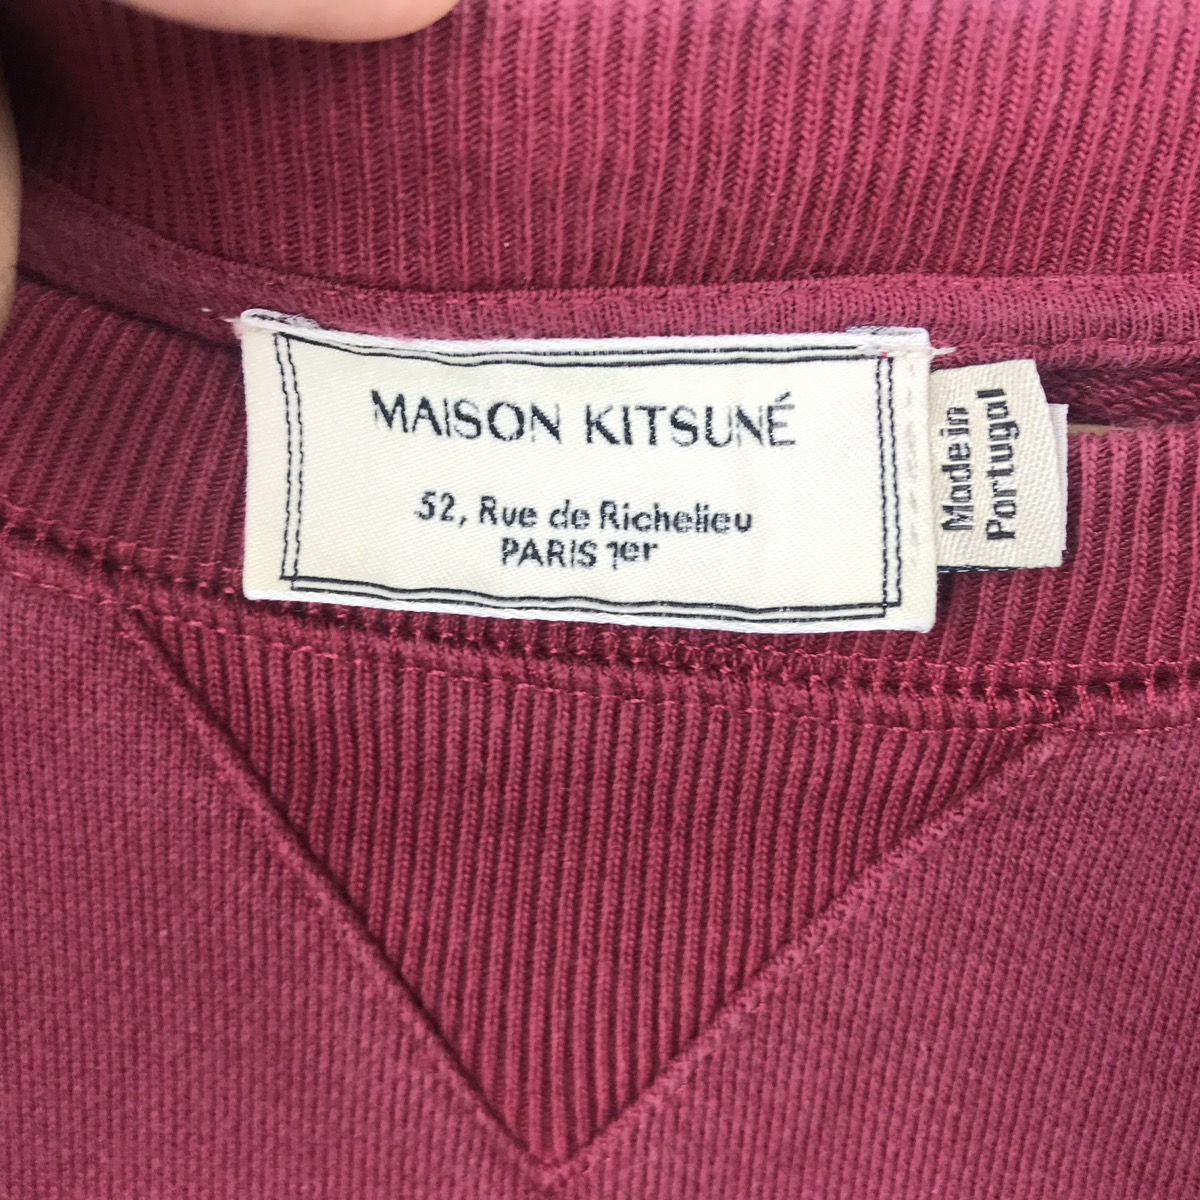 Vintage Maison Kitsune Paris Sweatshirt Spellout Sweater - 3